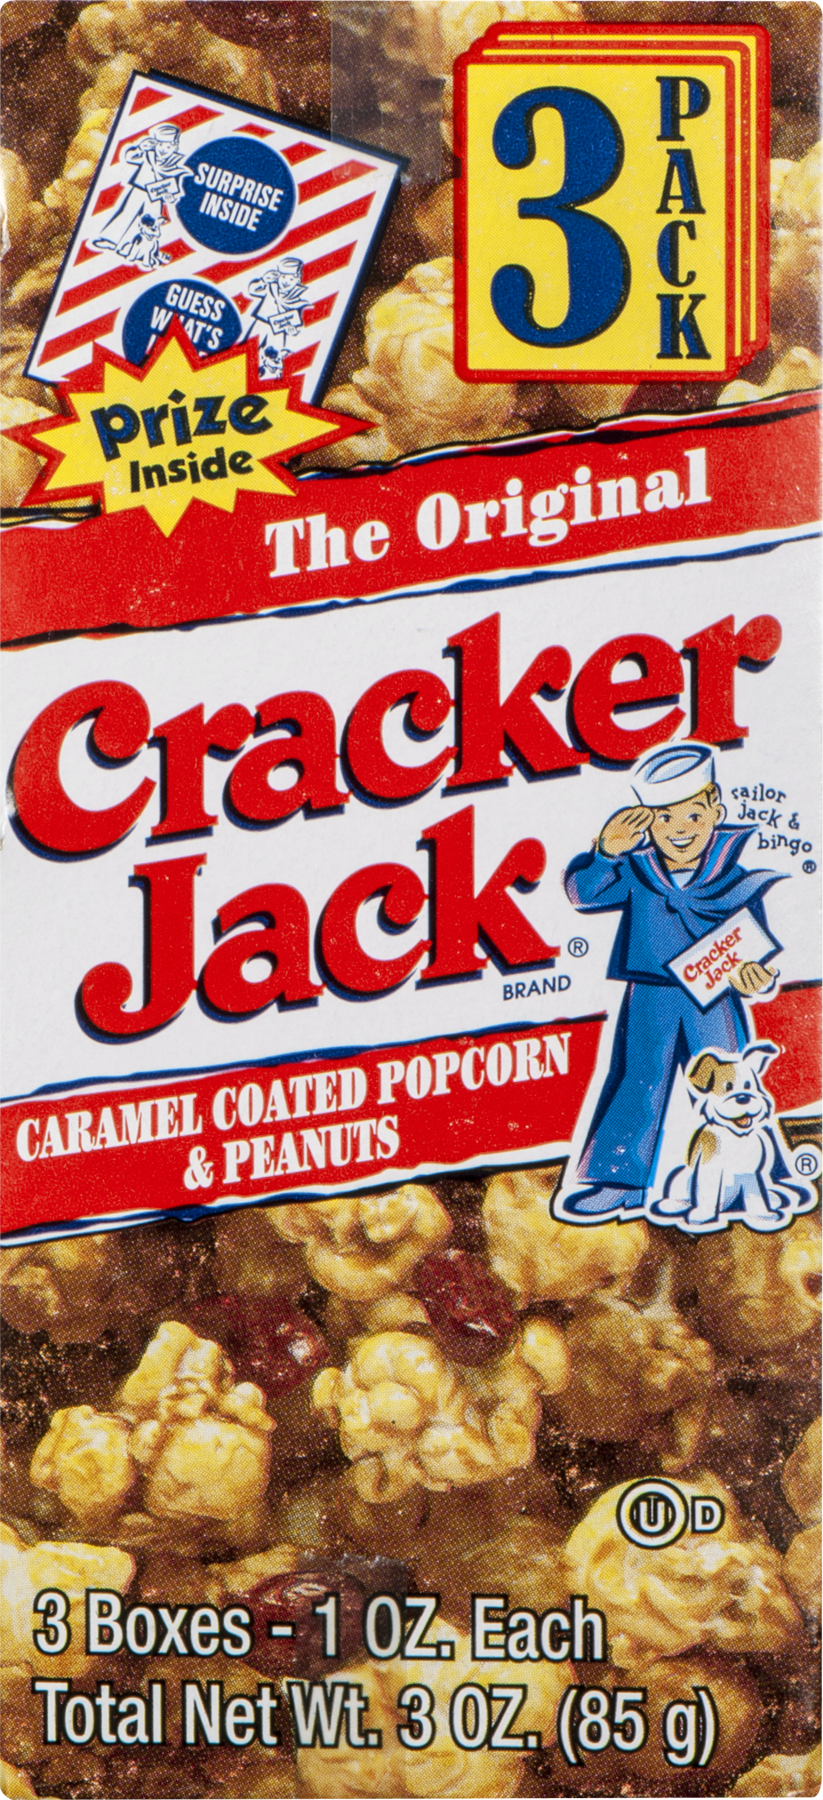 Cracker Jack Caramel Coated Popcorn & Peanut, 1 Oz., 3 Count - Walmart.com  - Walmart.com